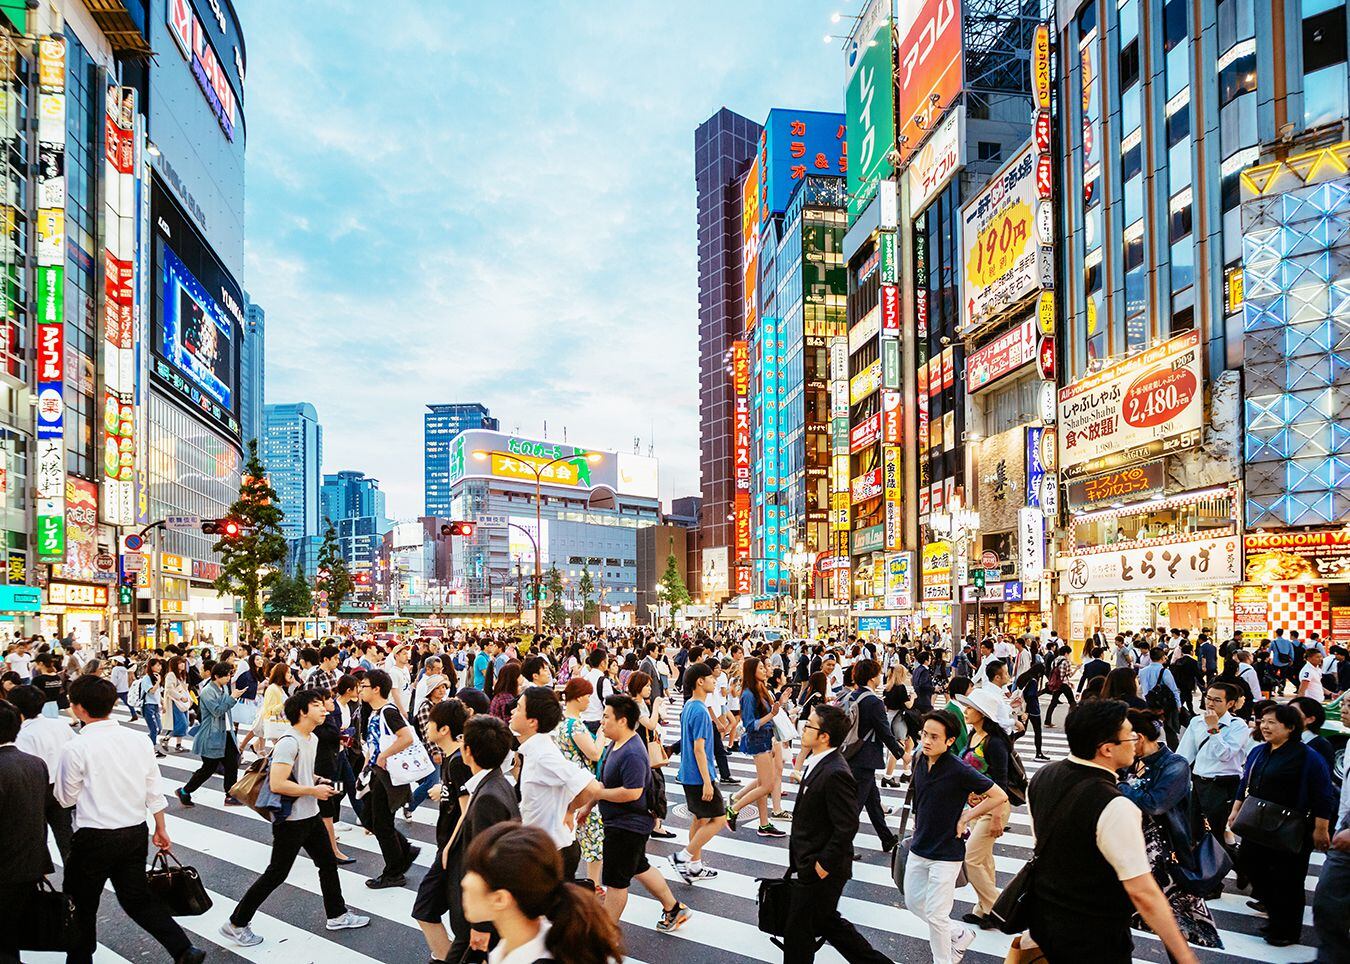 La Estación de Shinjuku es una de las principales estaciones de ferrocarril de la ciudad japonesa de Tokio, situada en el distrito de Shinjuku. Según el Libro Guiness es la estación más concurrida del mundo.